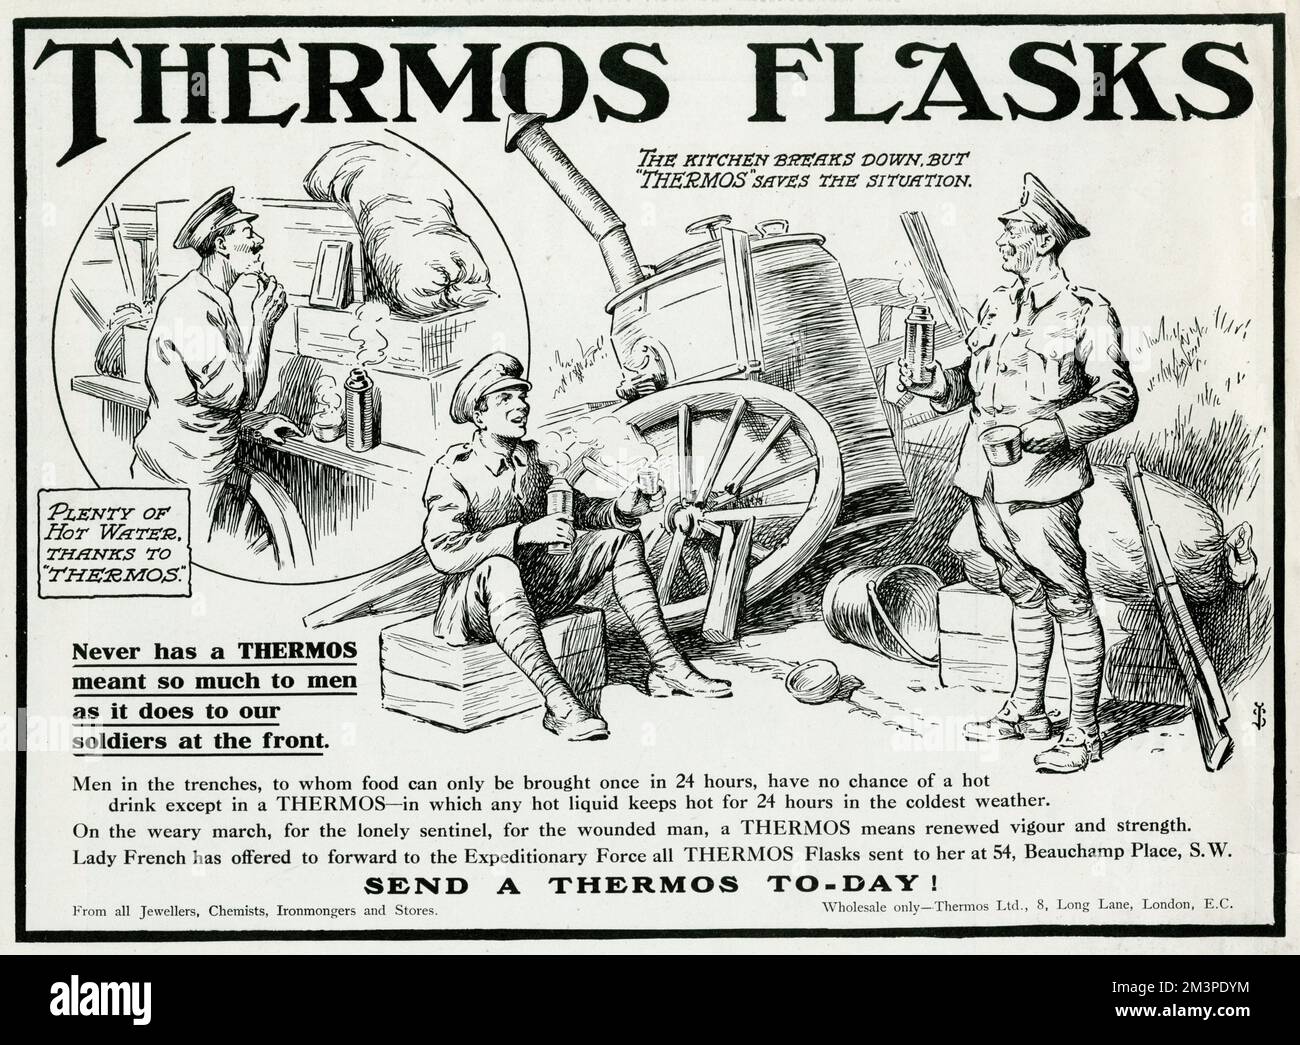 Publicidad de Jolly para Thermos Flasks, un accesorio esencial para lidiar  con la vida de las trincheras durante la Primera Guerra Mundial. El termo  permite una gran cantidad de agua caliente para